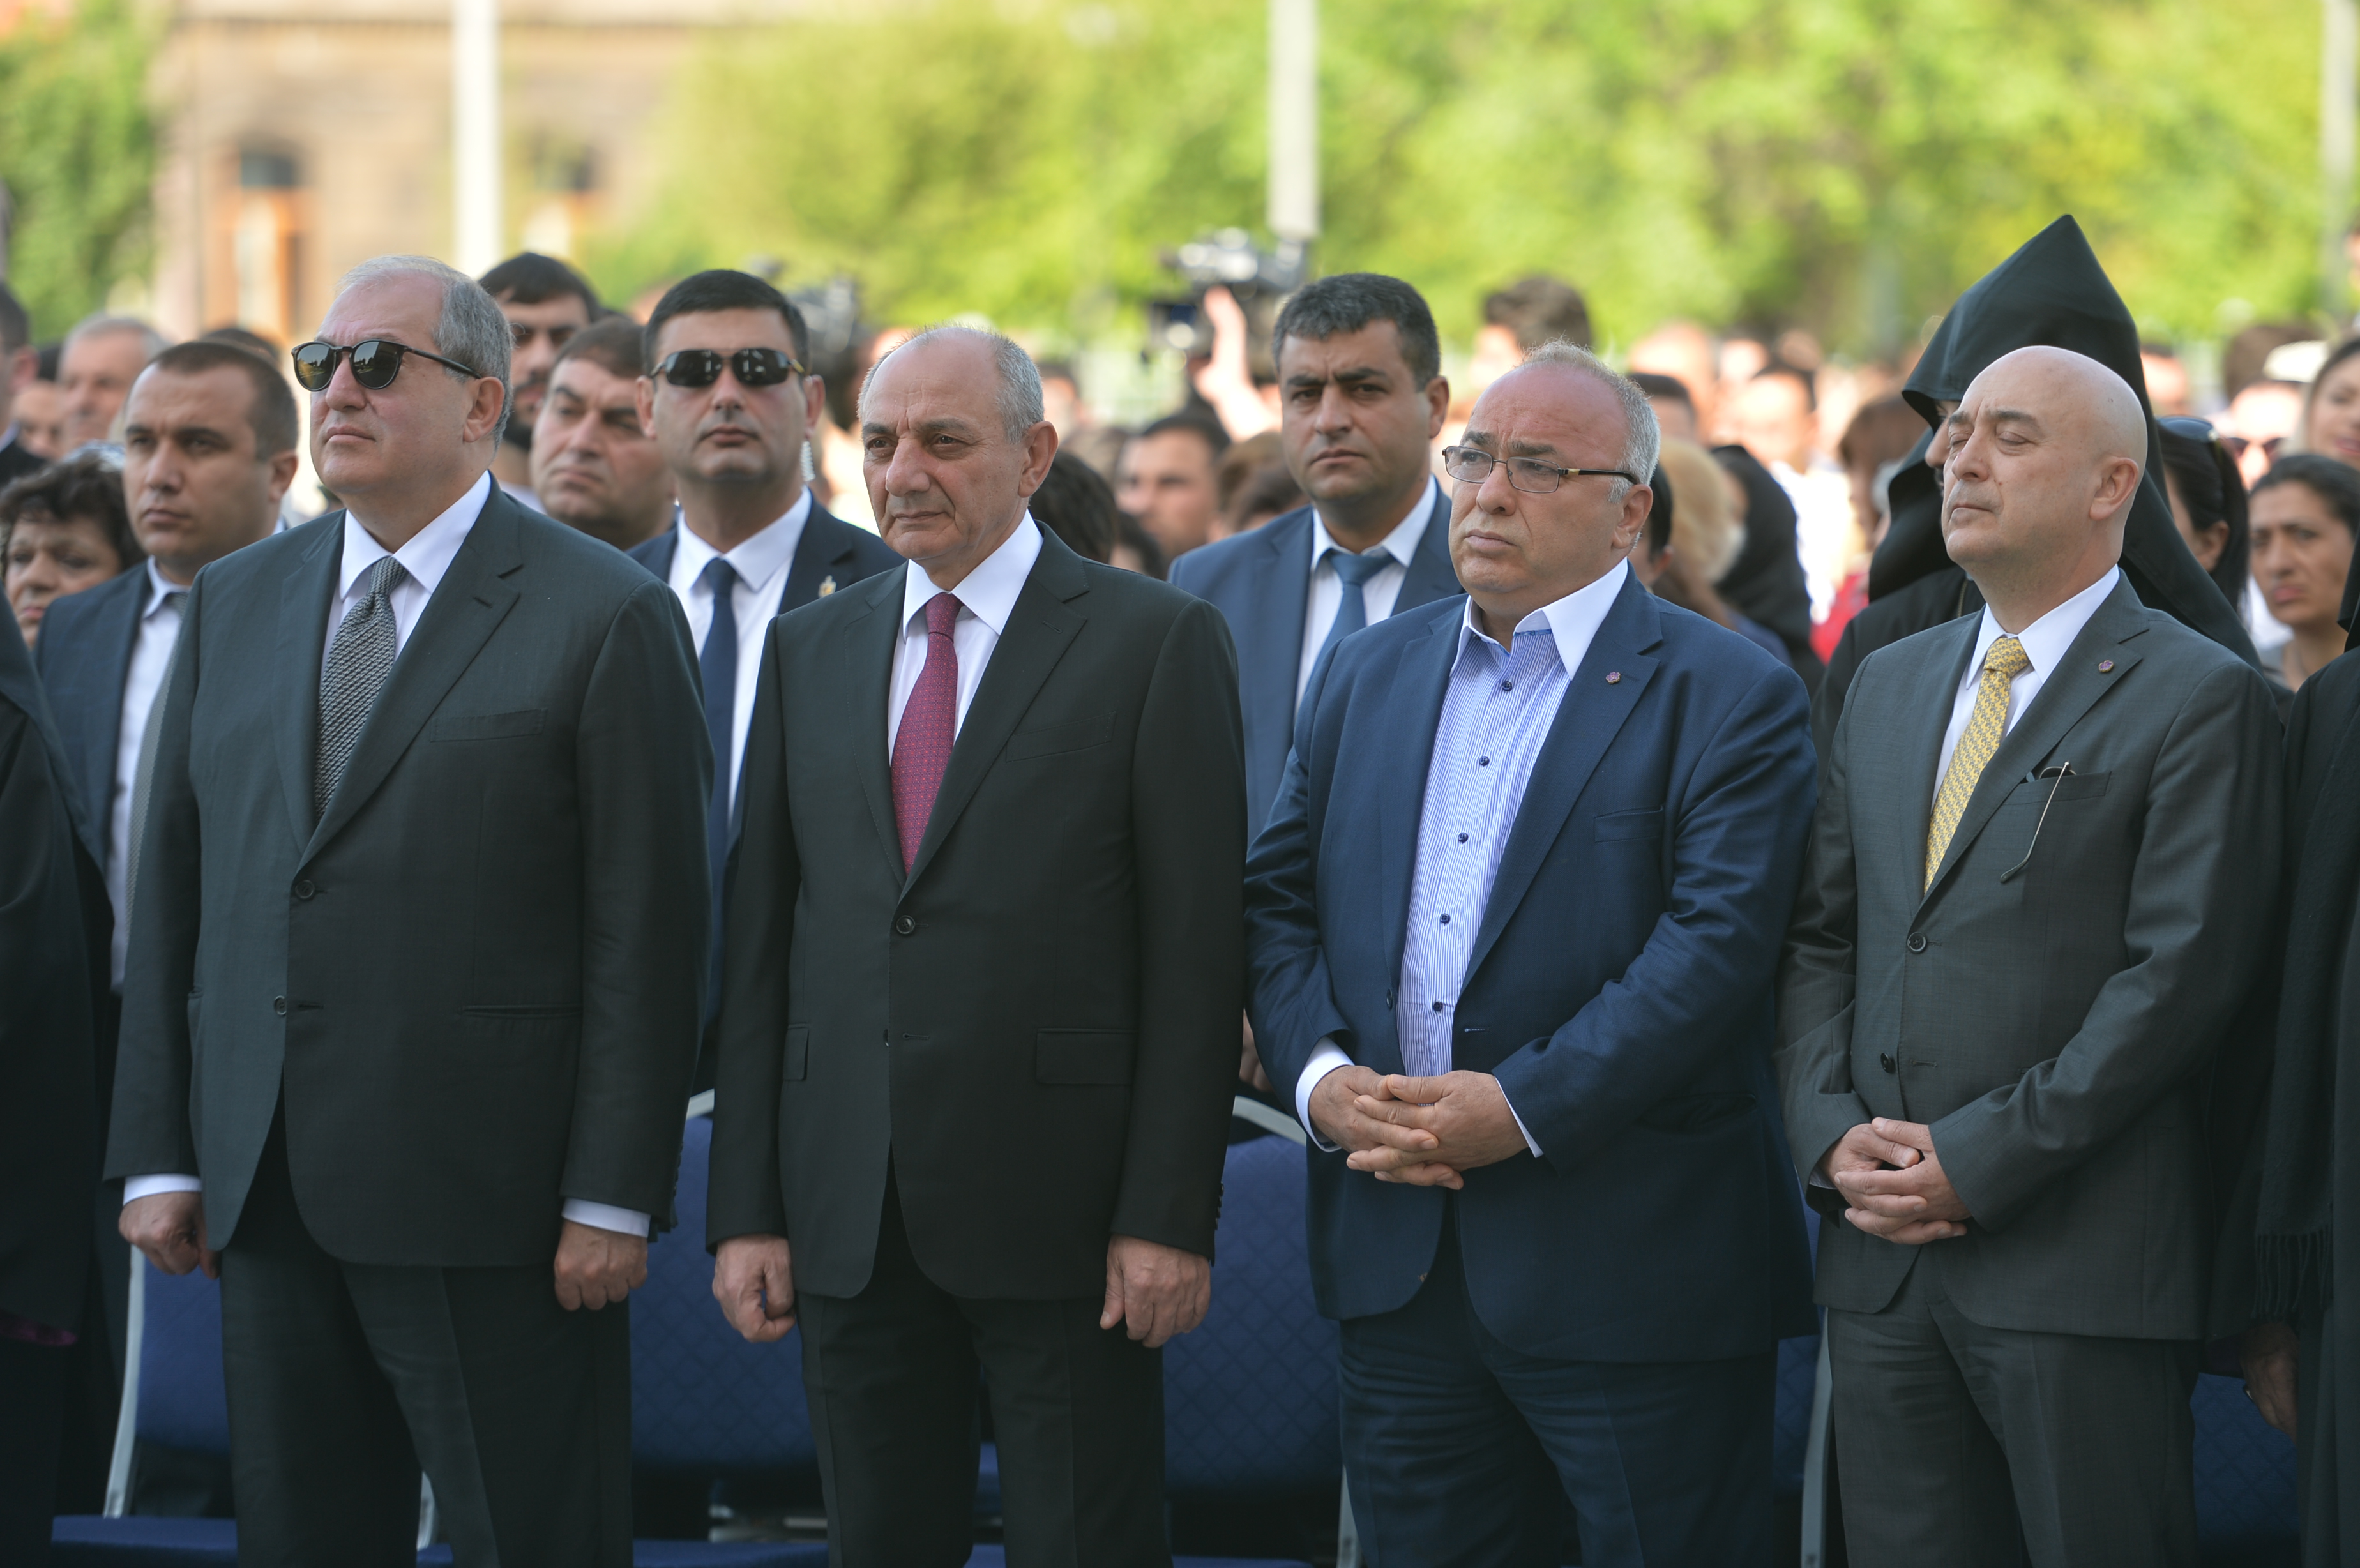 Последние перемены в Армении предоставляют возможность решительного прорыва - президент